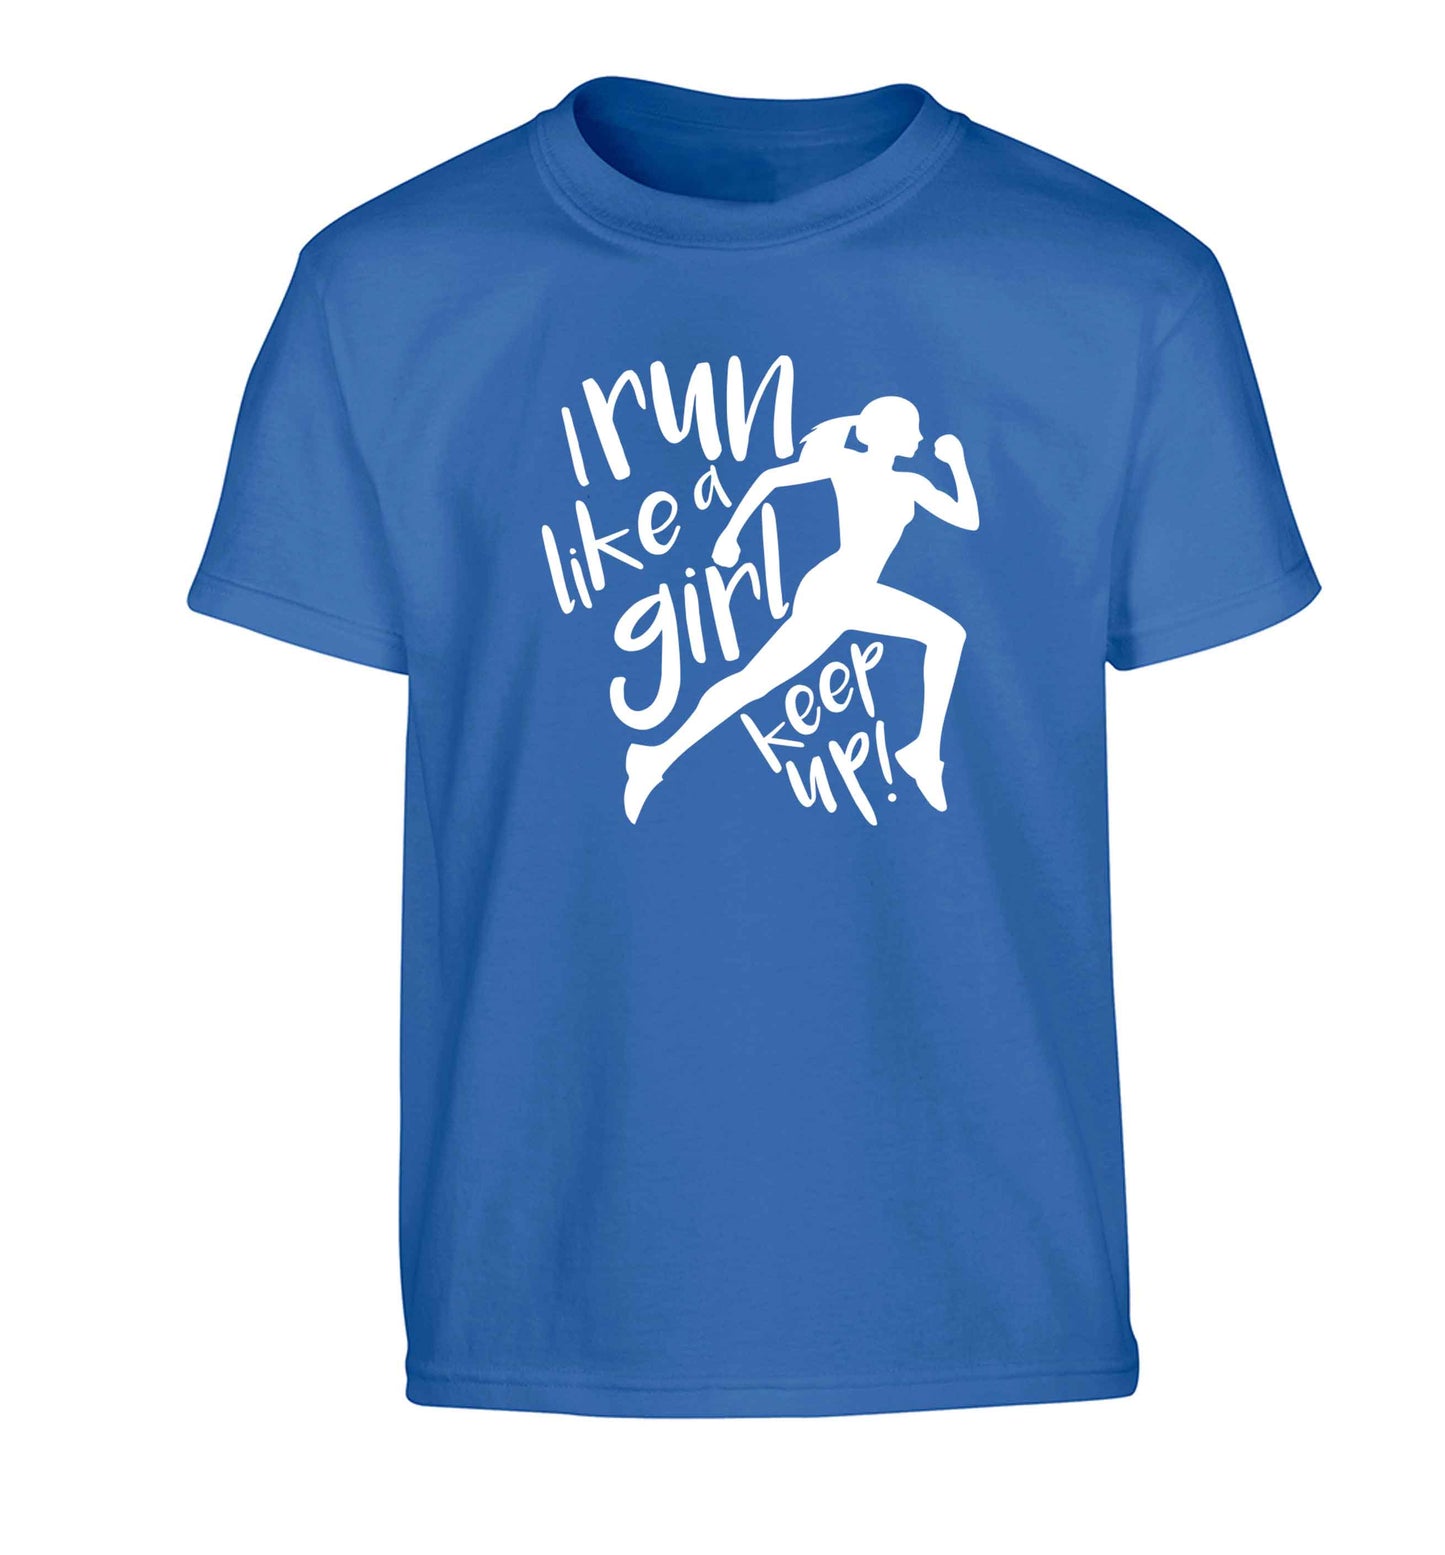 I run like a girl, keep up! Children's blue Tshirt 12-13 Years